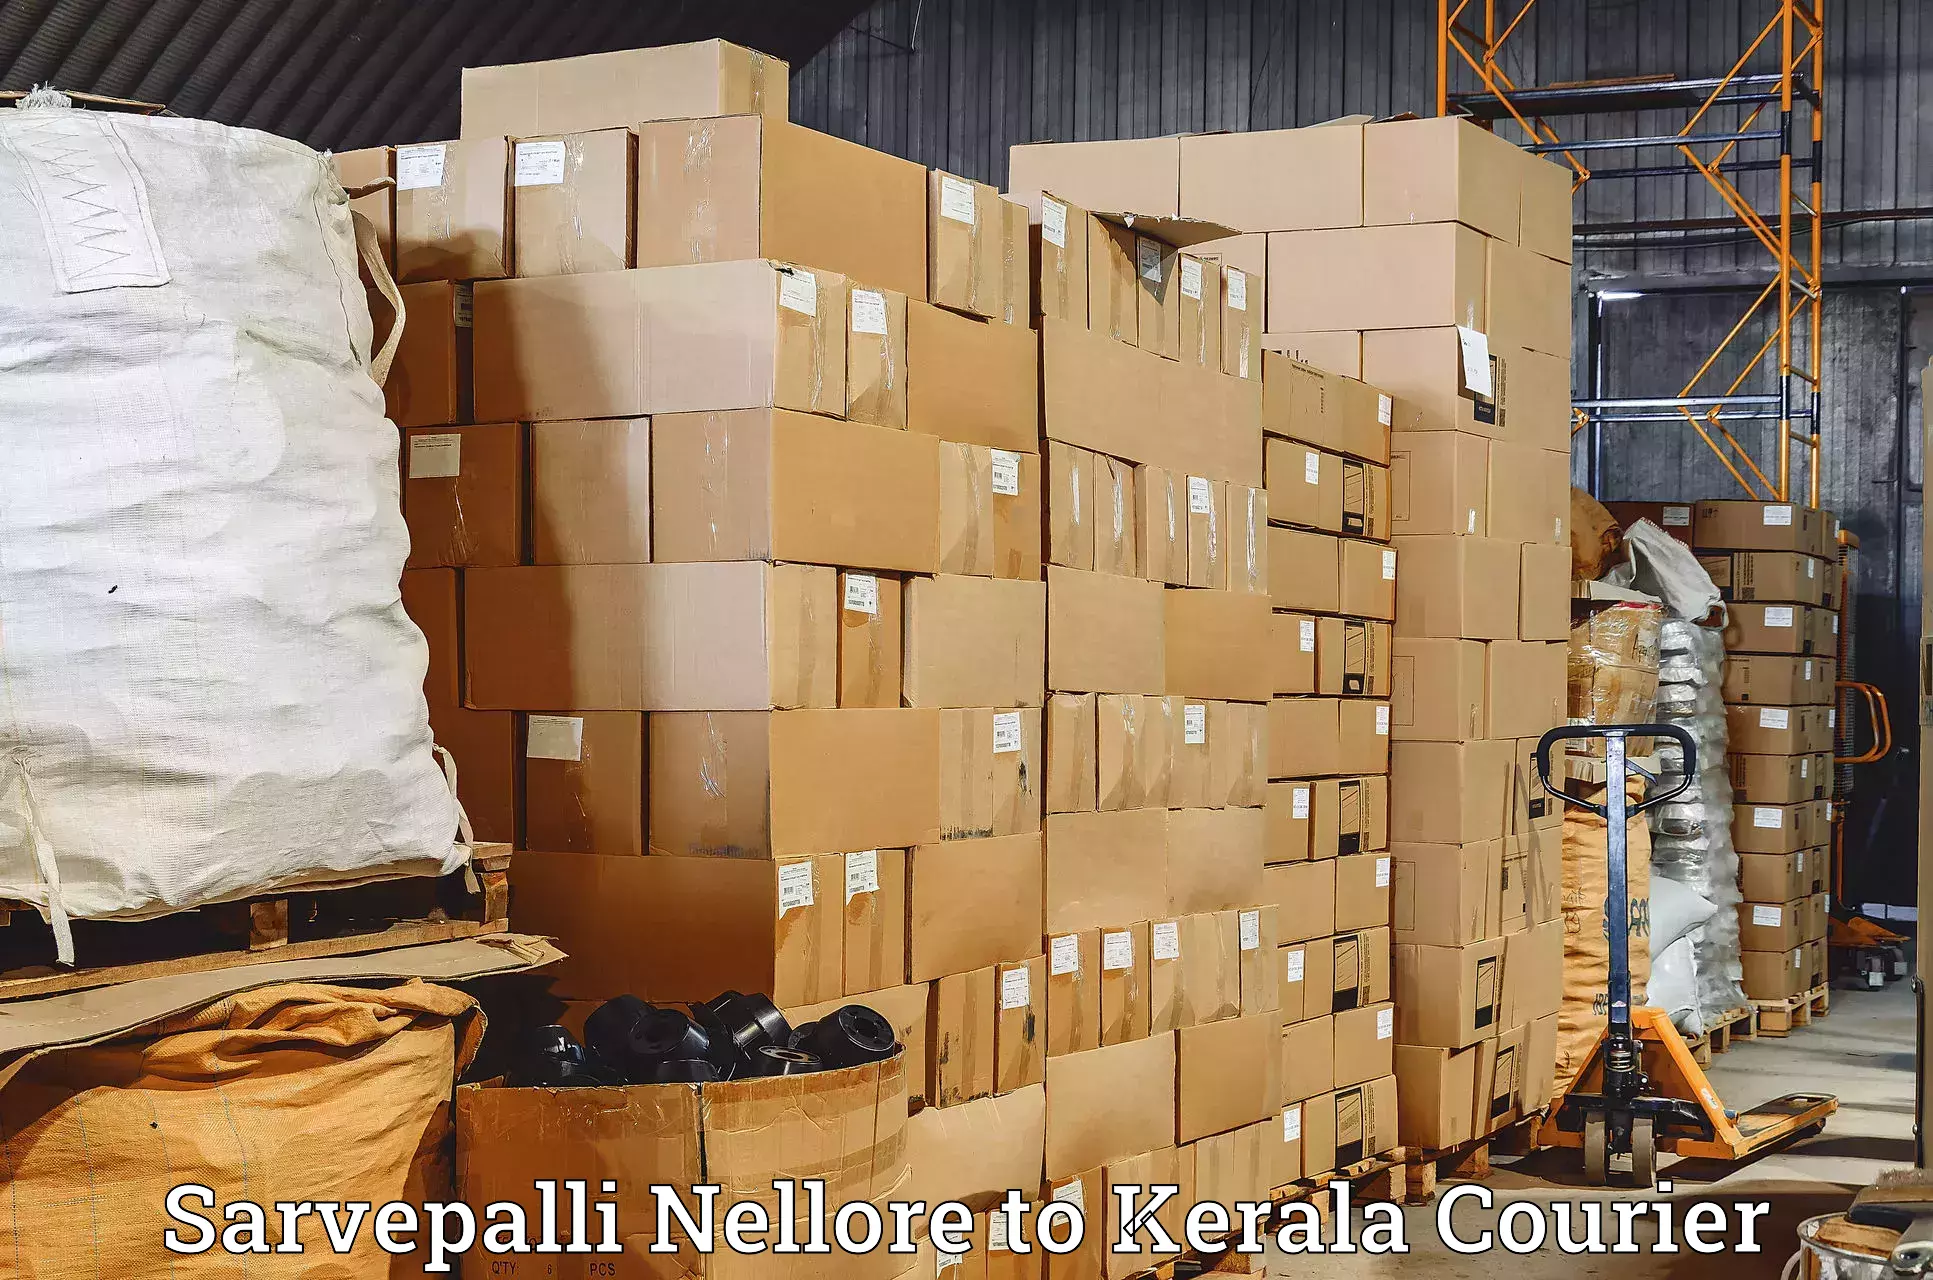 Weekend courier service Sarvepalli Nellore to Kochi